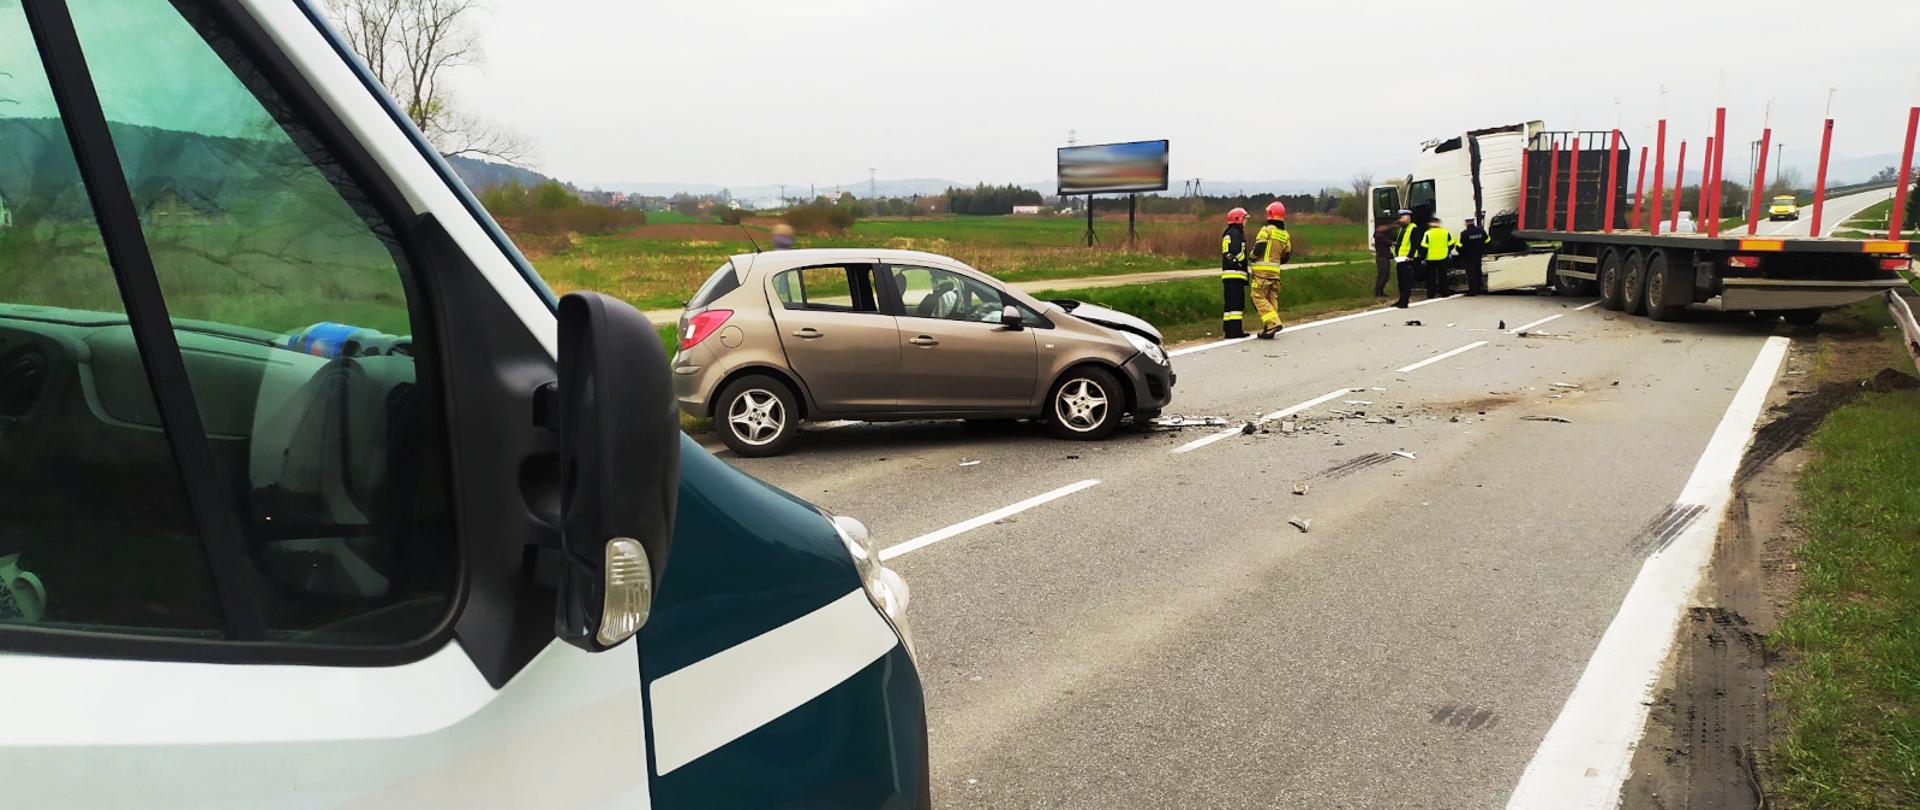 Inspektorzy małopolskiej Inspekcji Transportu Drogowego na miejscu wypadku, do którego doszło na drodze wojewódzkiej nr 969. Na pierwszym planie, po lewej inspekcyjny furgon. W centrum uszkodzony samochód osobowy. W oddali, po prawej pojazd ciężarowy.